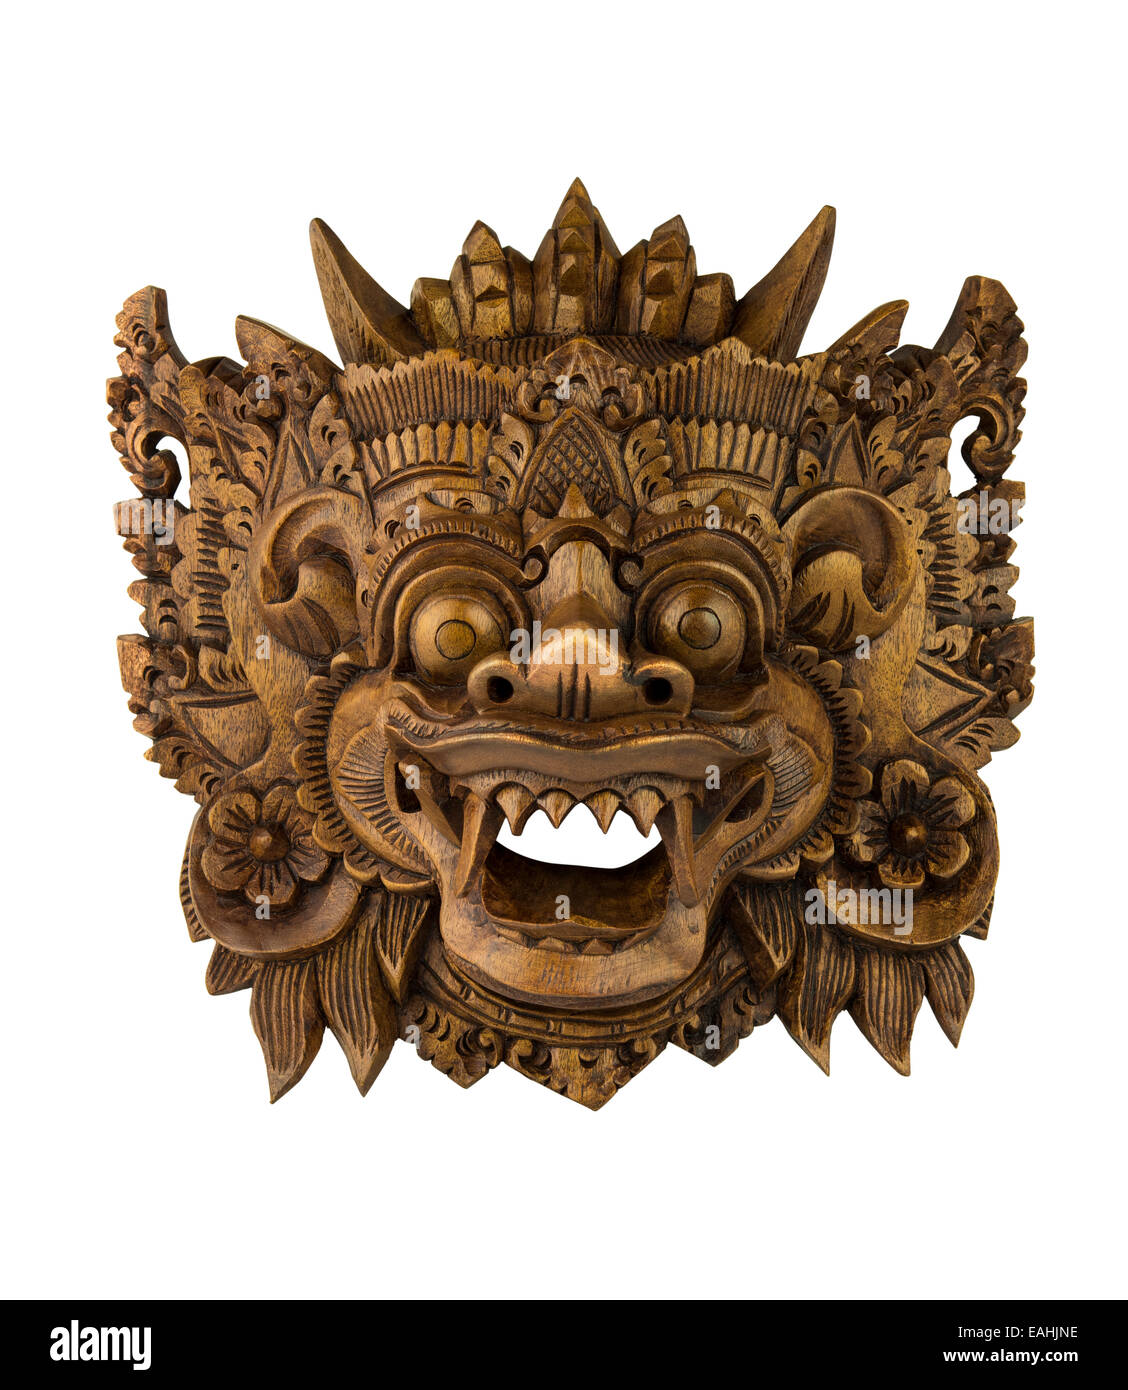 Traditionelle hölzerne Barong-Maske aus Bali, Indonesien, auf weißem  Hintergrund Stockfotografie - Alamy